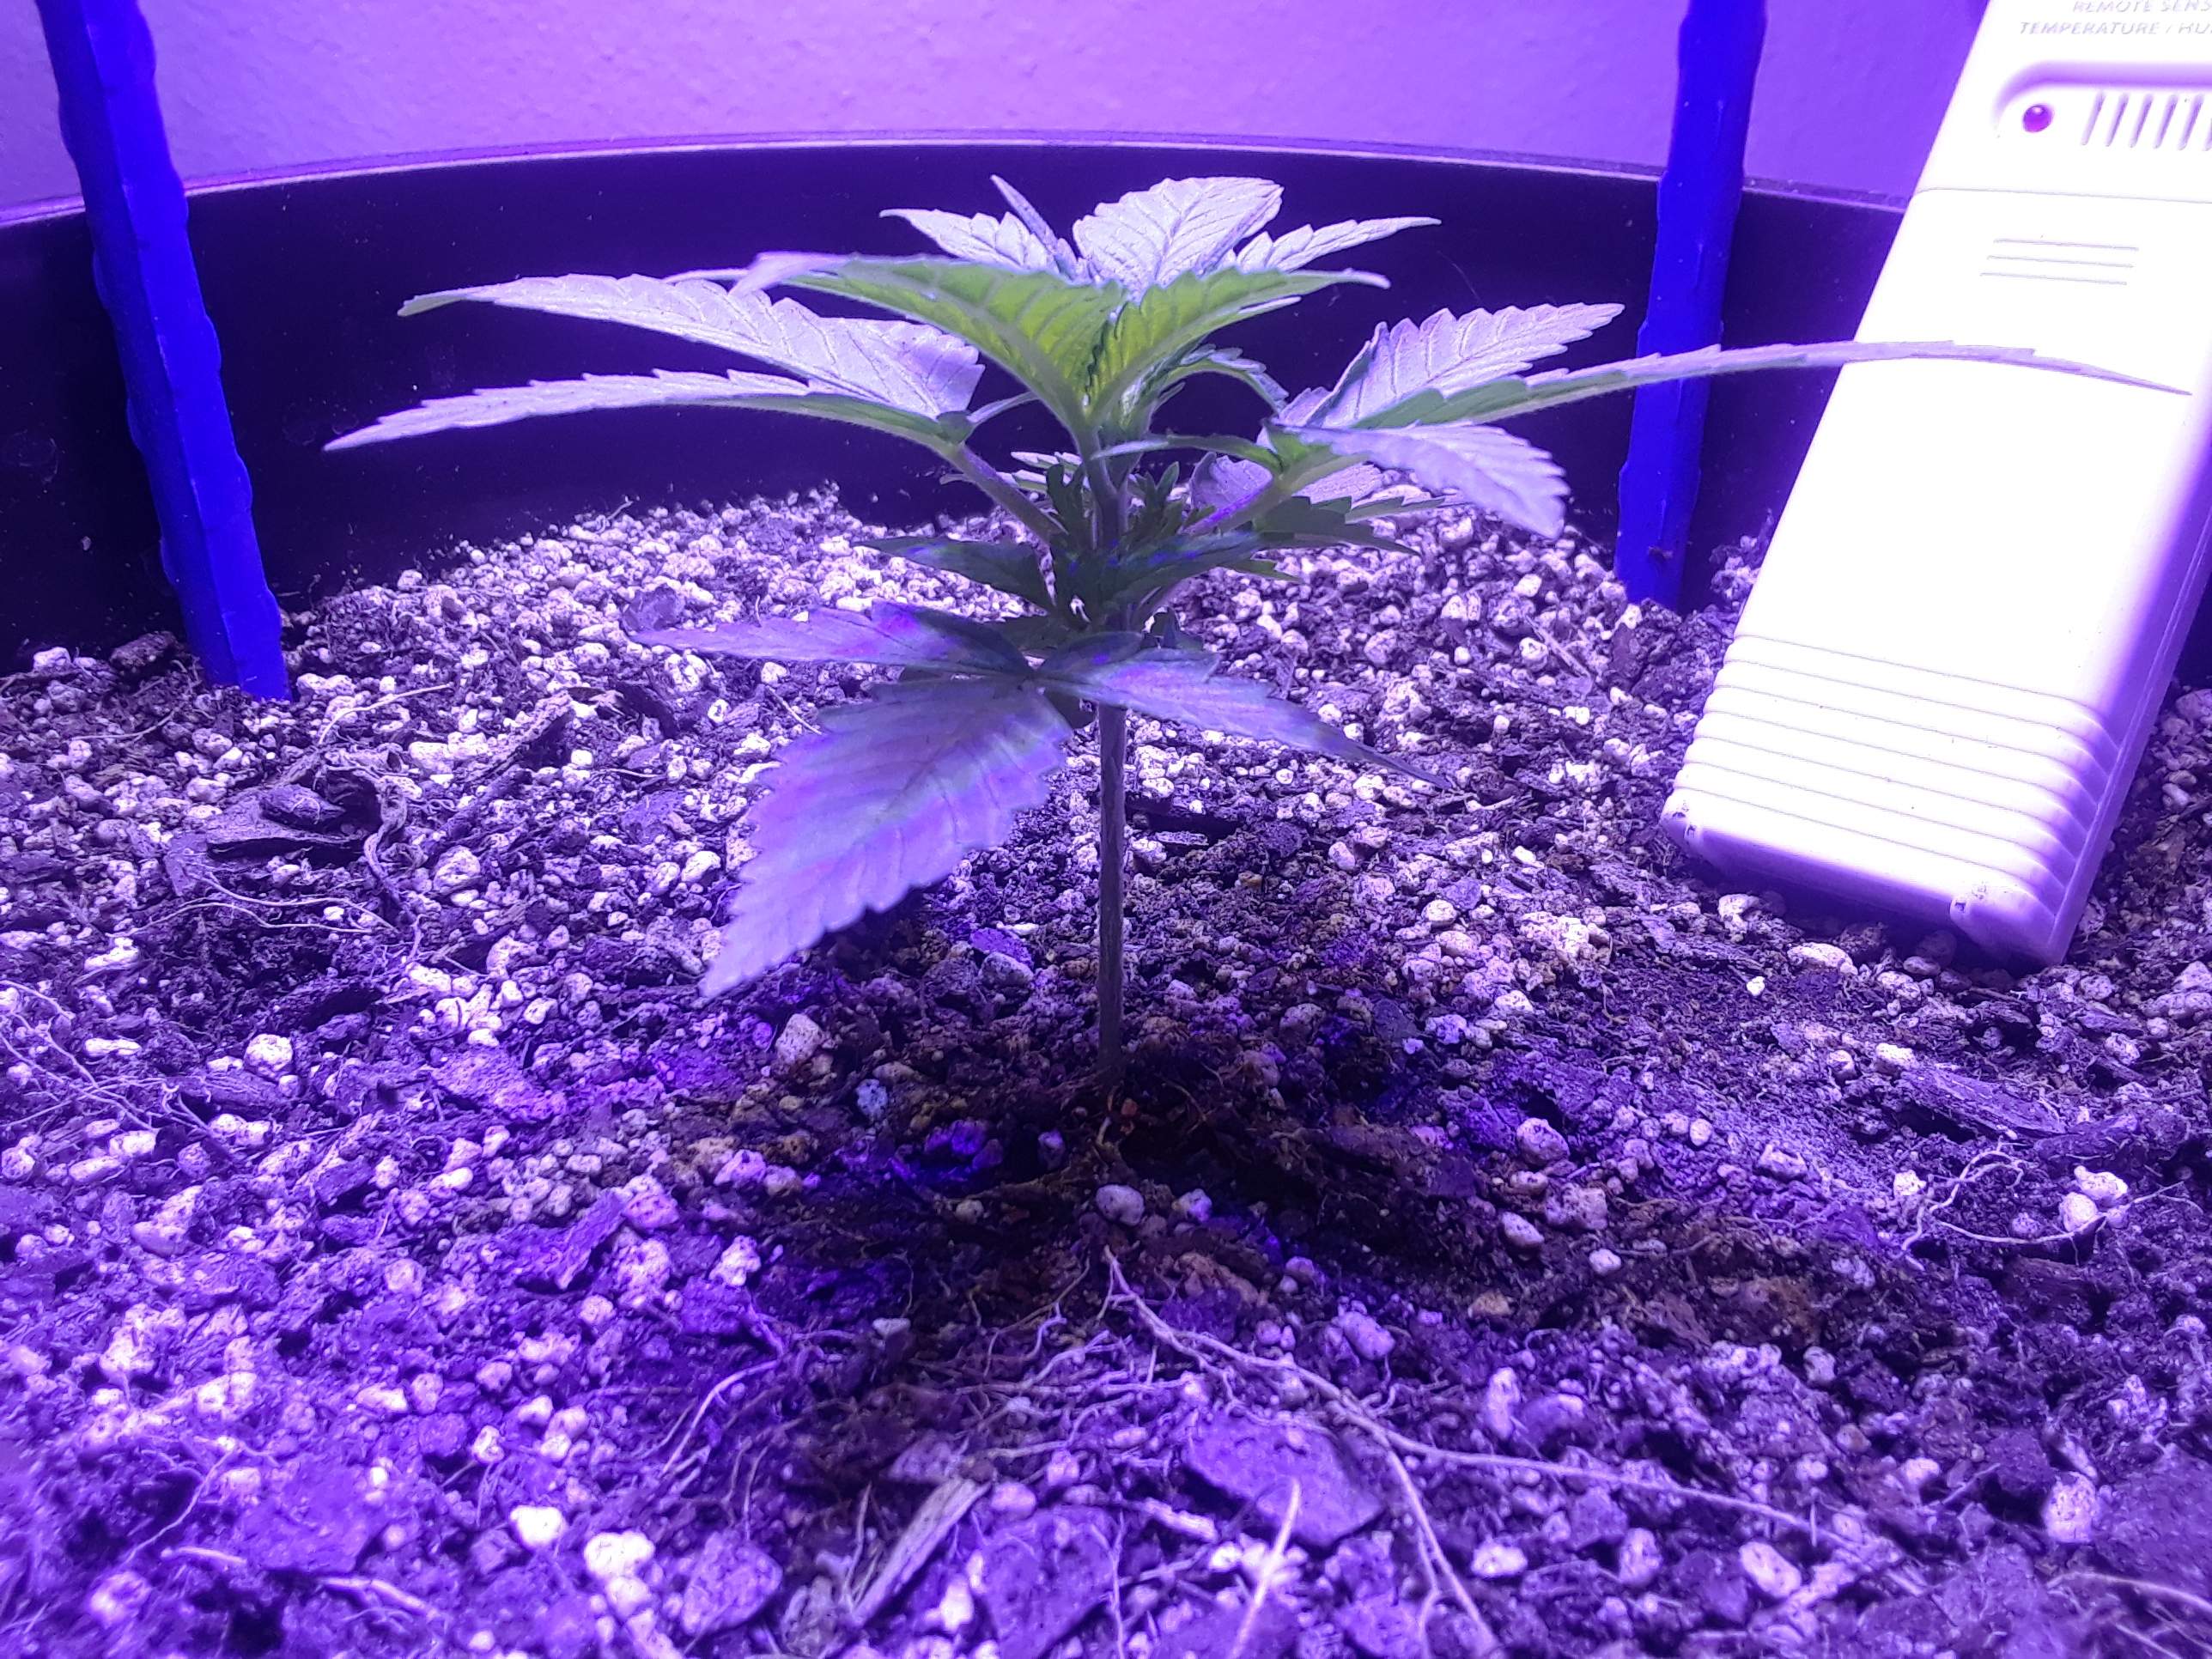 a purple plant in a purple planter